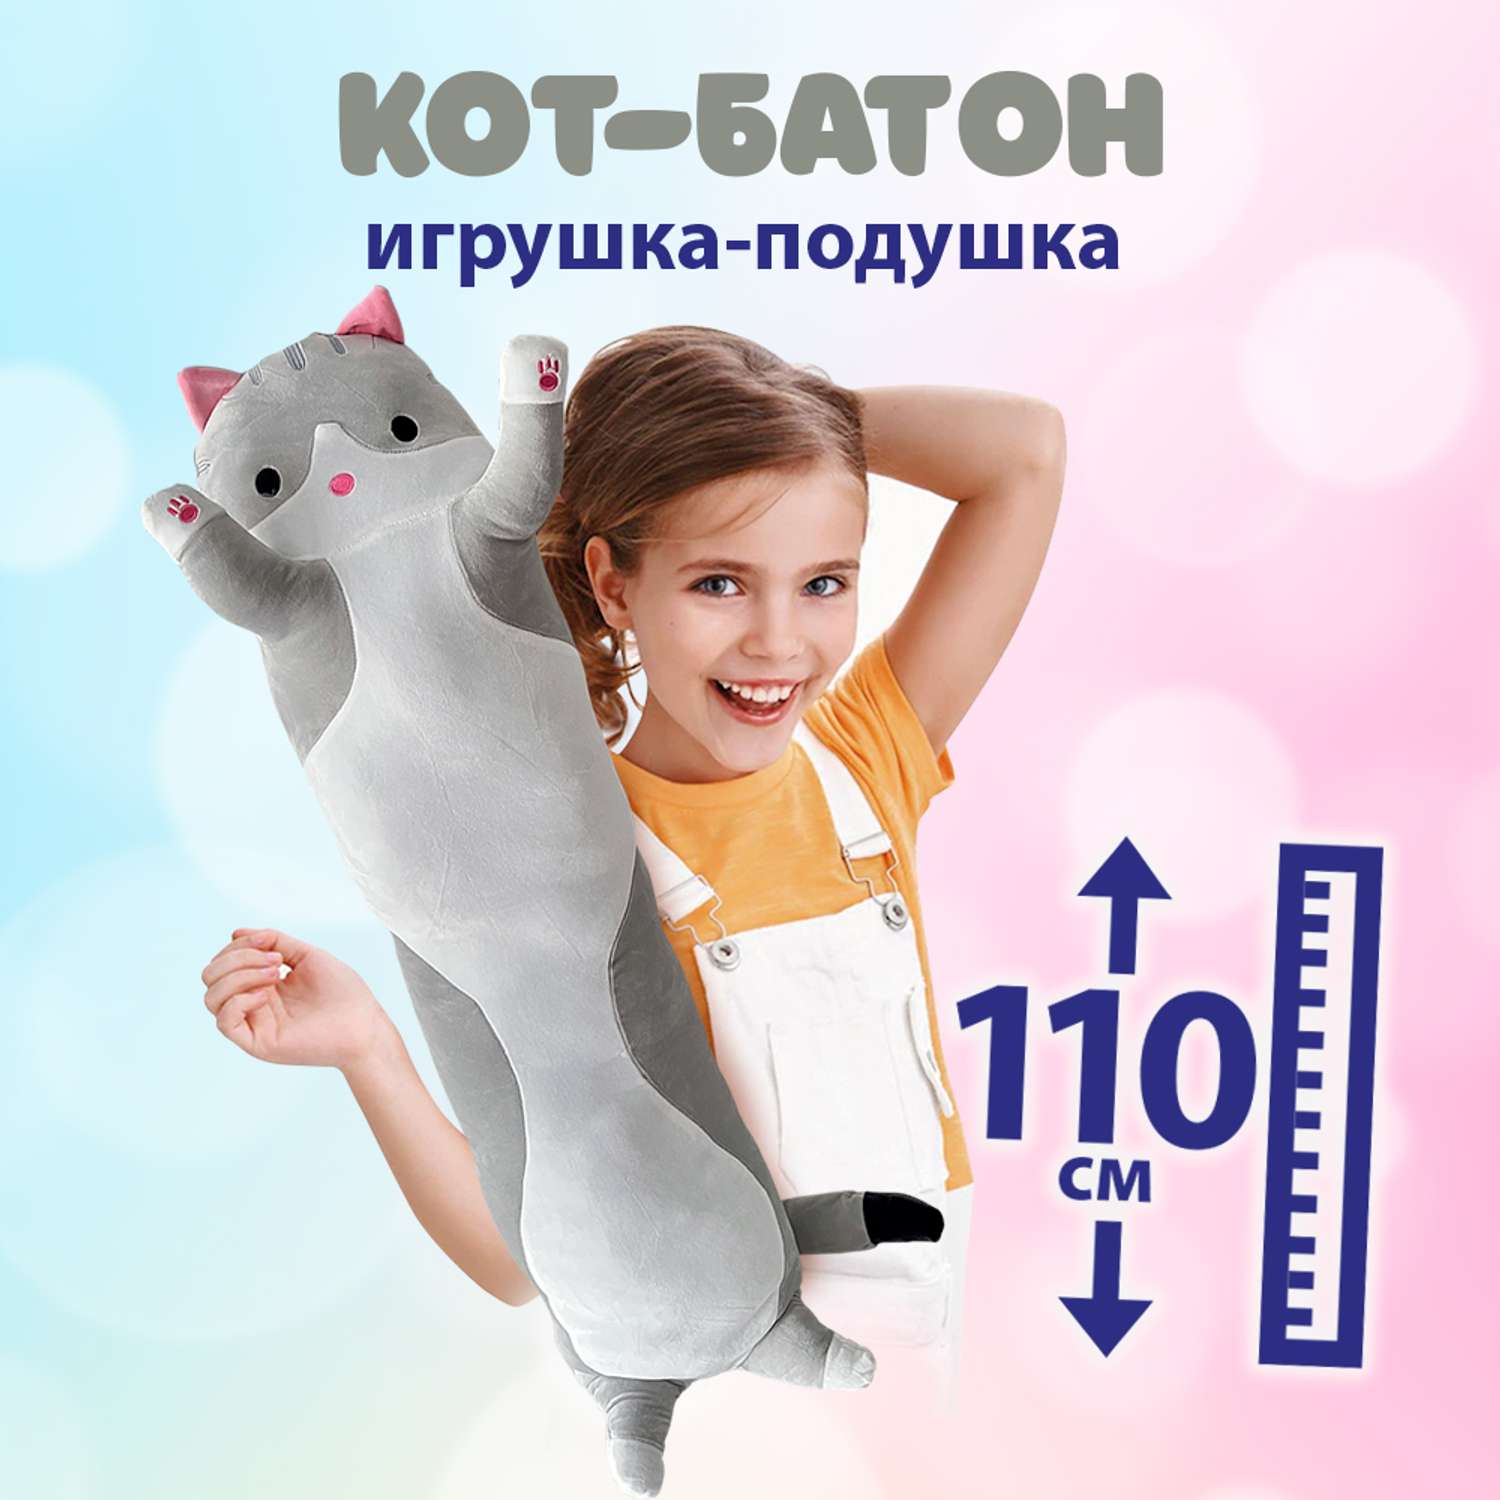 Подушка-обнимашка Territory кот Батон антистресс серый 110 см - фото 1